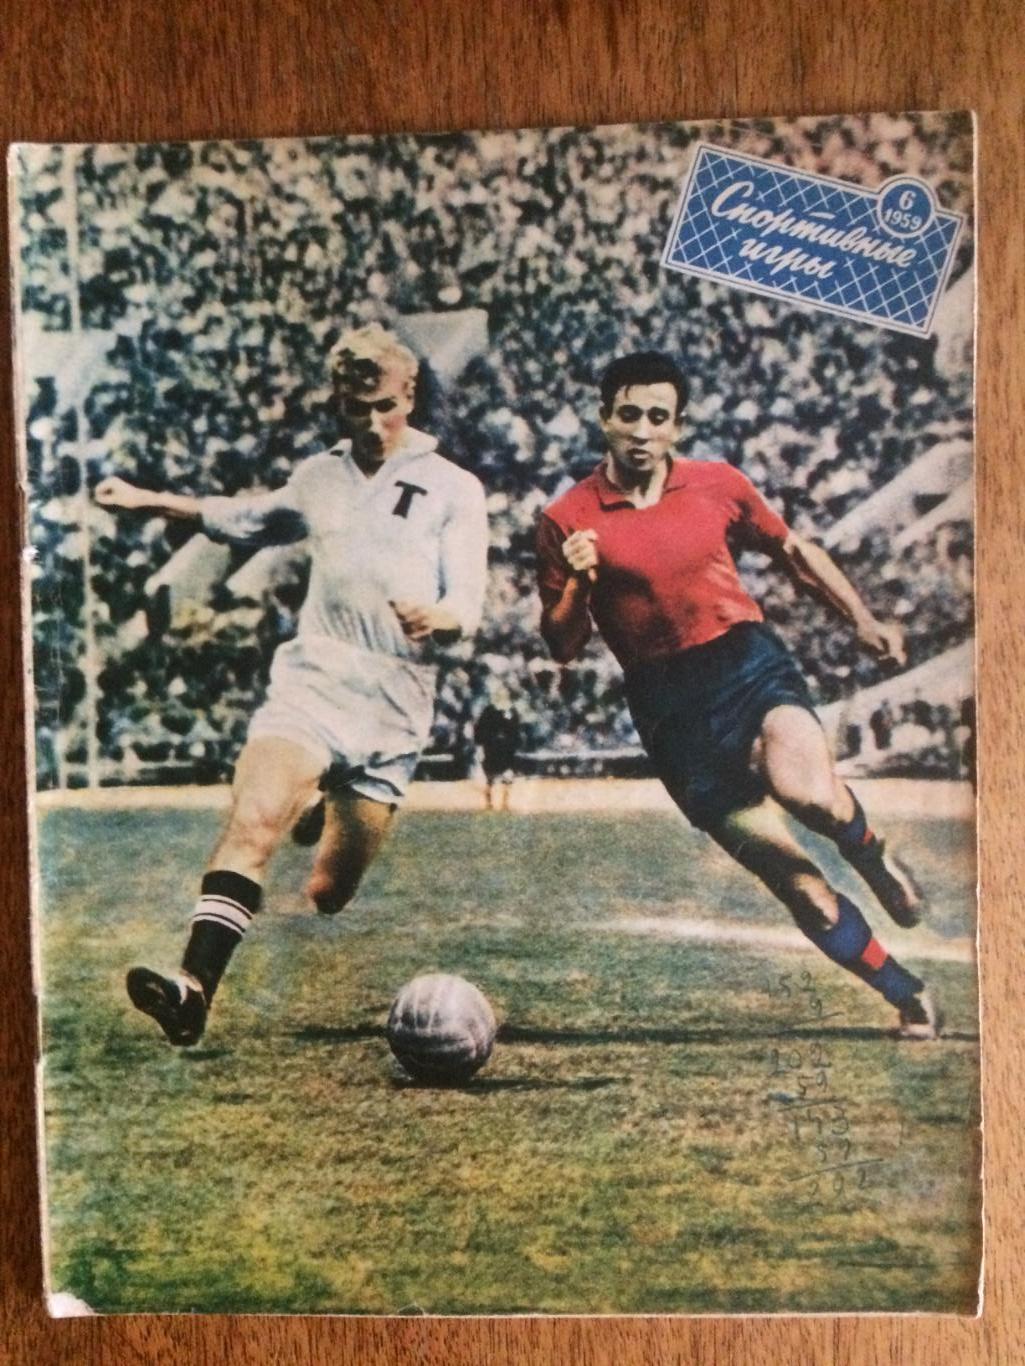 Журнал Спортивные игры №6 1959